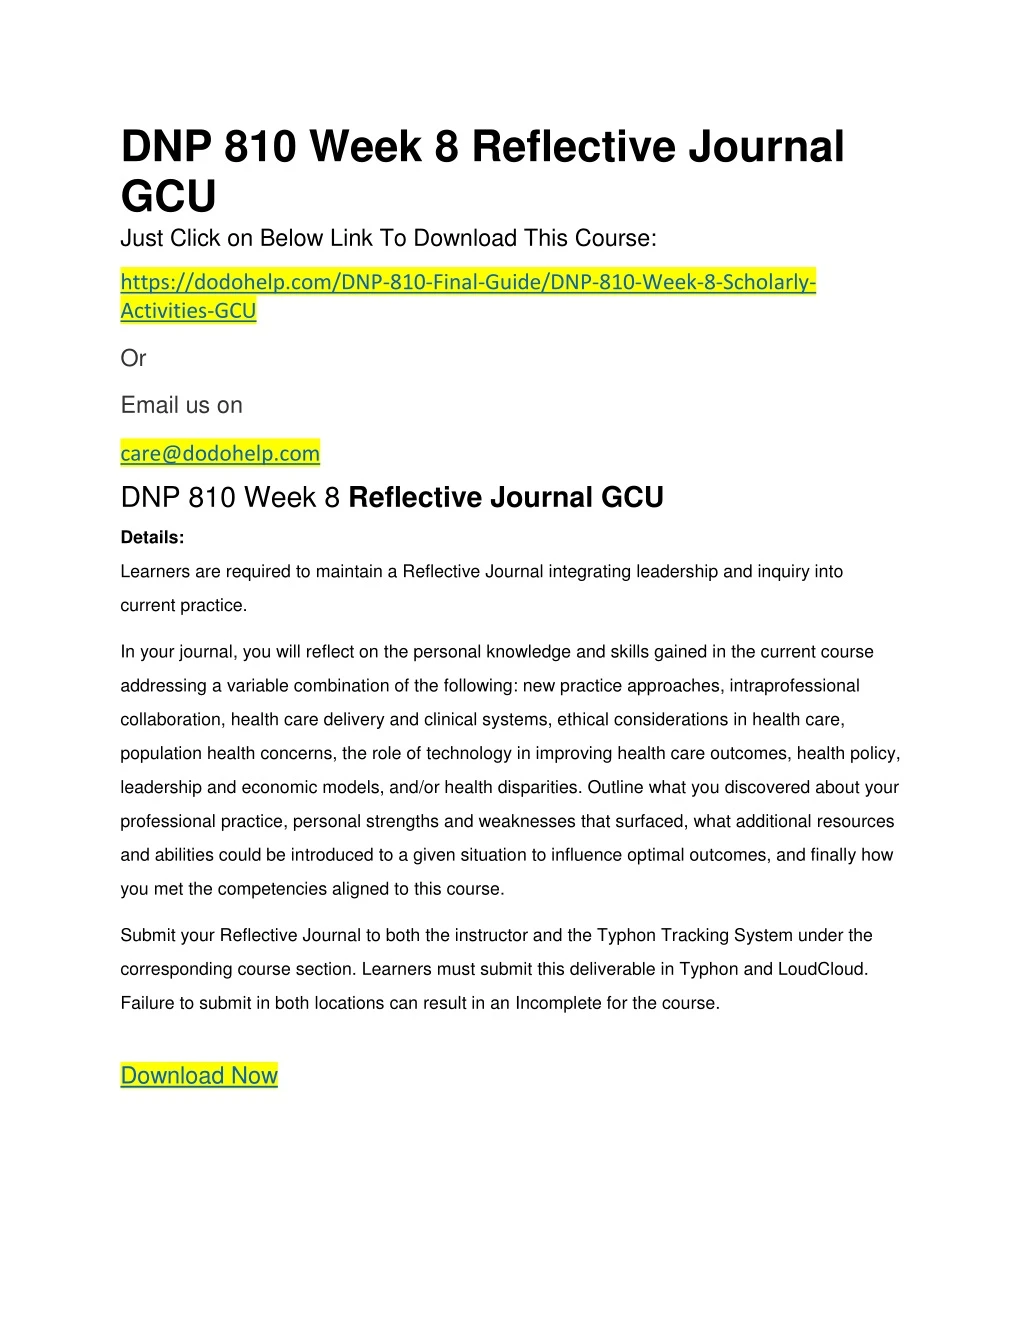 dnp 810 week 8 reflective journal gcu just click